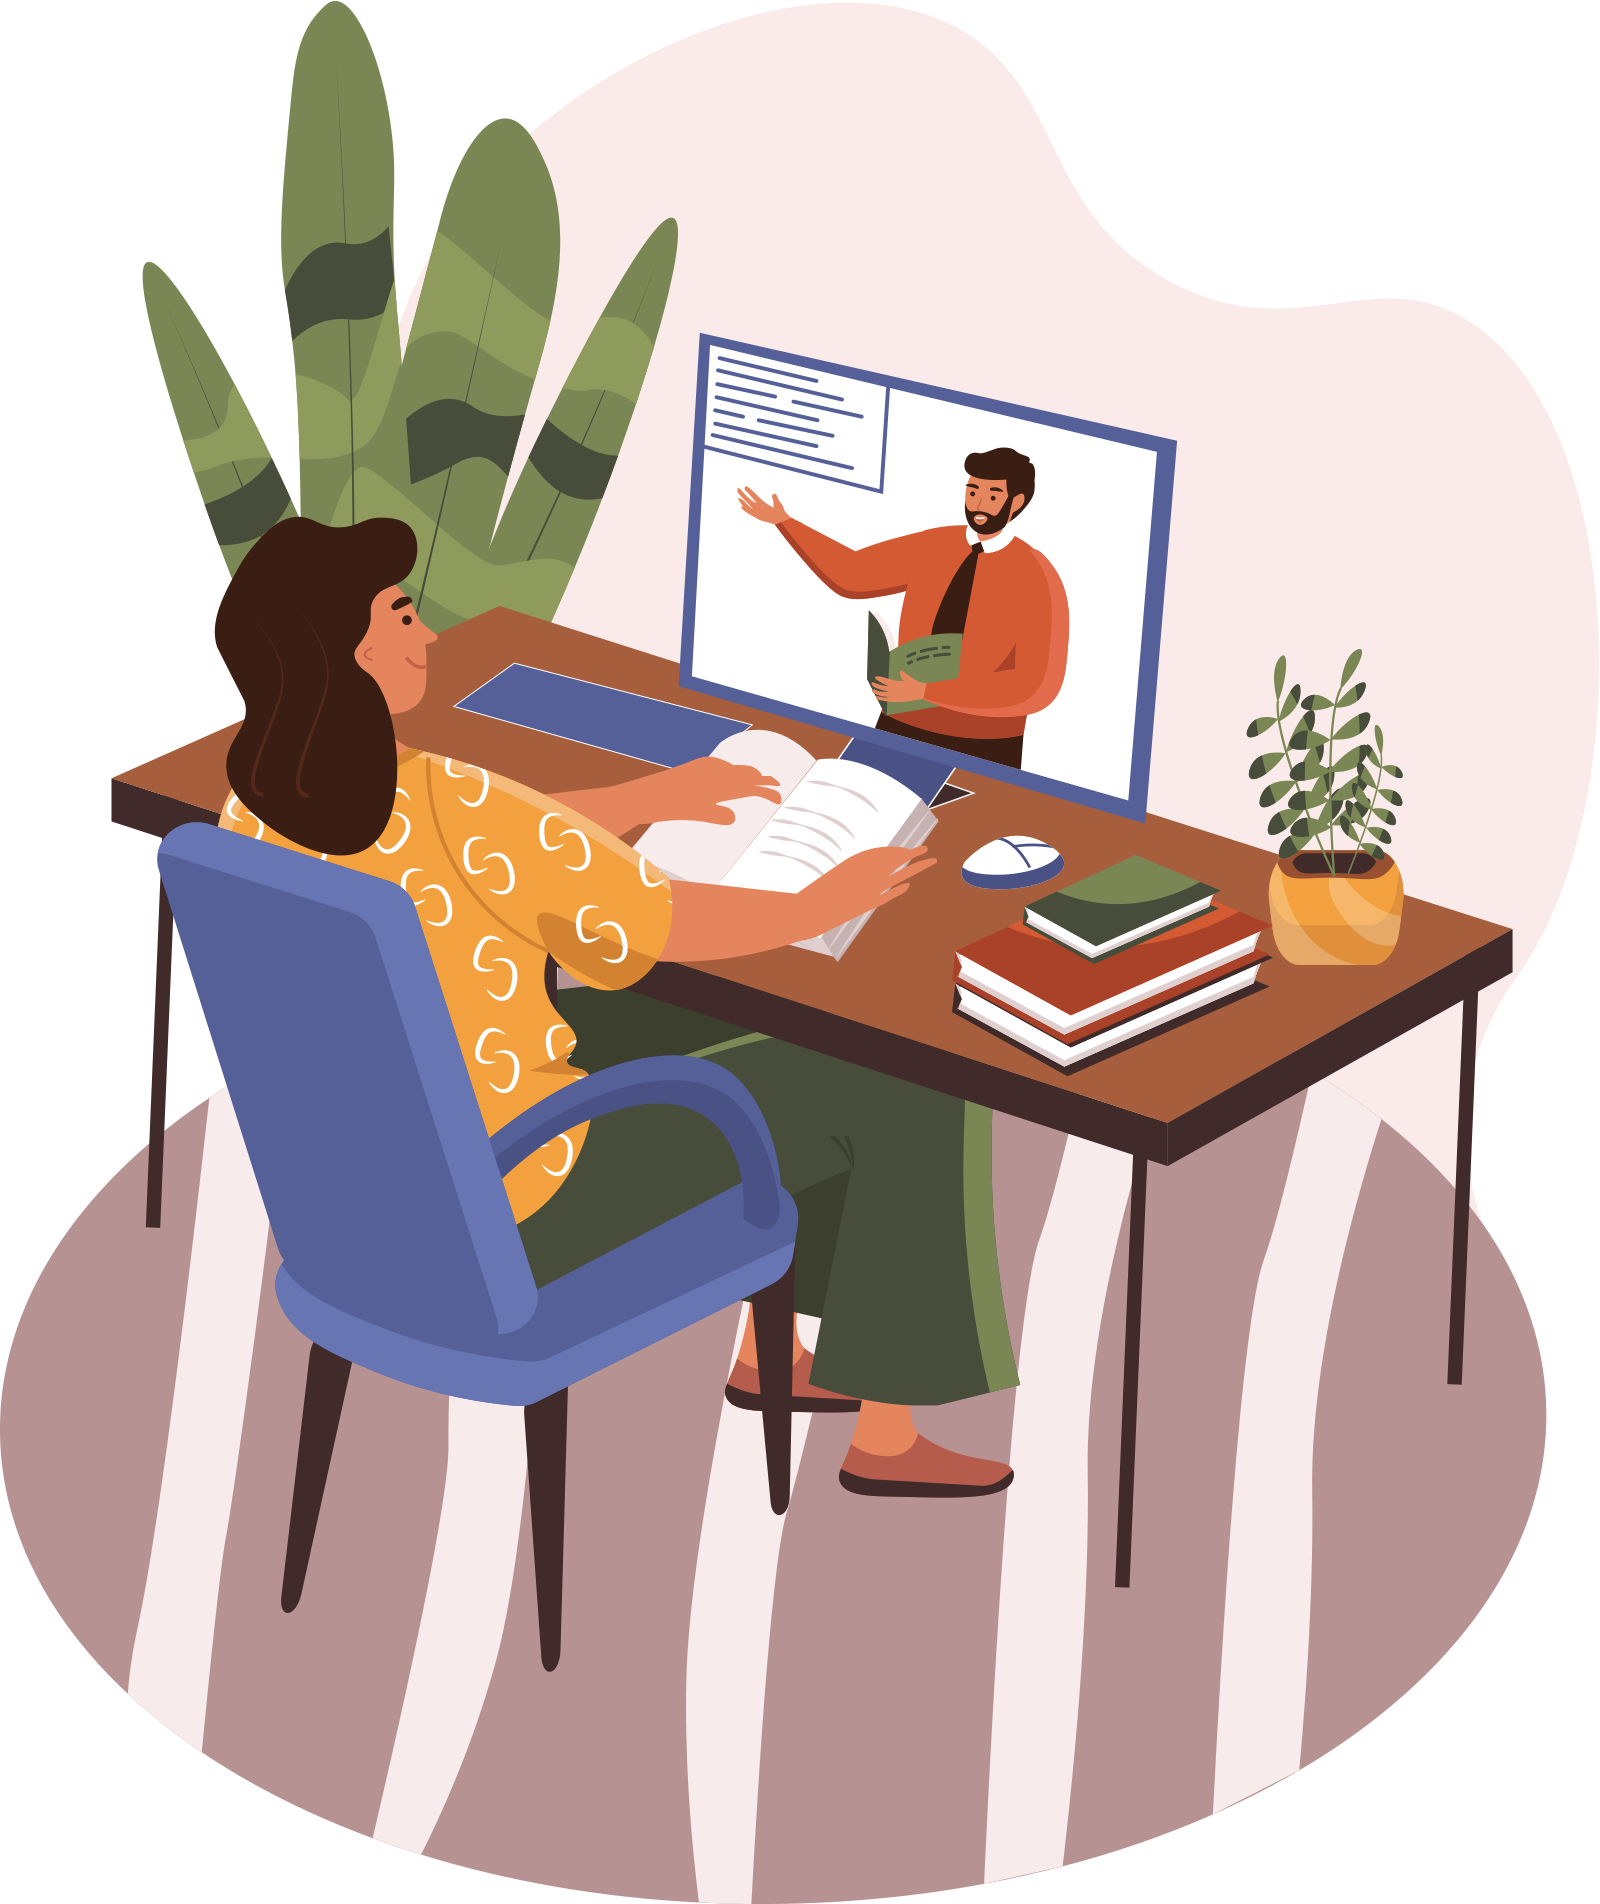 Eine Illustration zeigt eine Frau in einem virtuellen Meeting; sie sitzt an einem Schreibtisch und schaut auf einen Bildschirm, auf dem ein Mann präsentiert. Auf dem Tisch liegen Bücher, ein Notizbuch und eine Tasse; im Hintergrund sind Zimmerpflanzen.